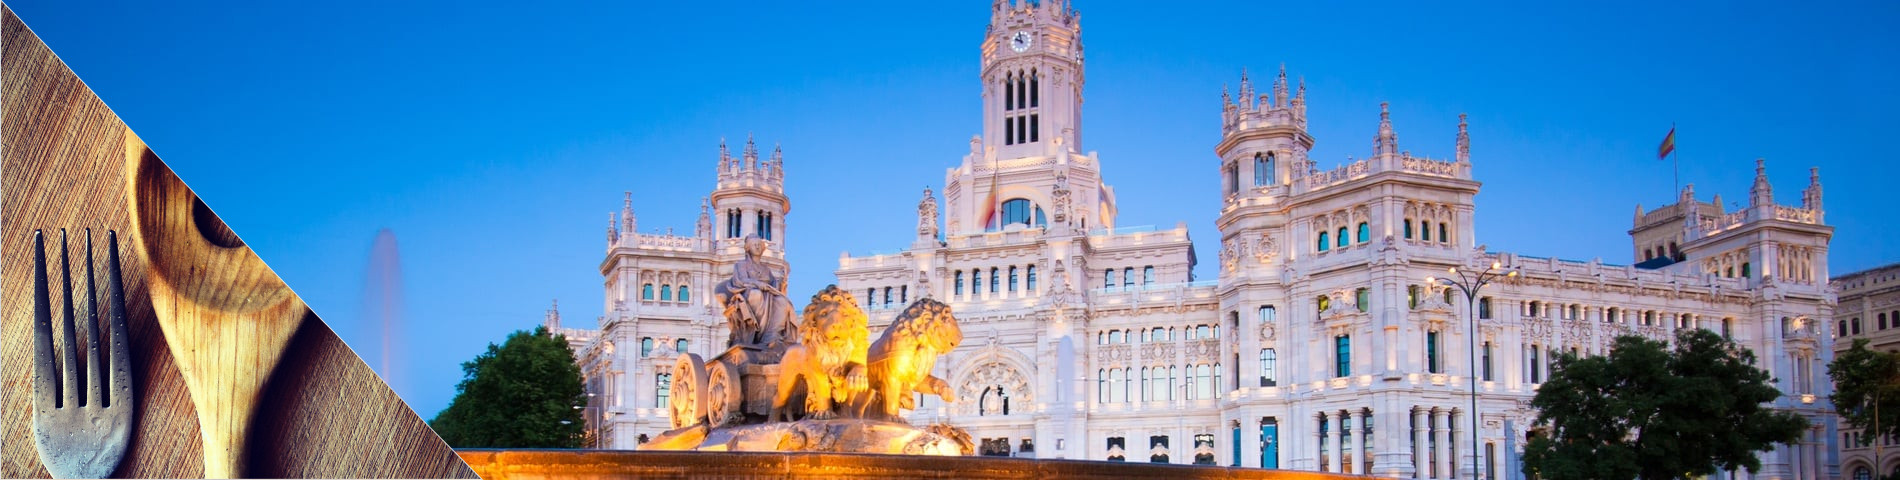 Madrid - Spanska & matlagning